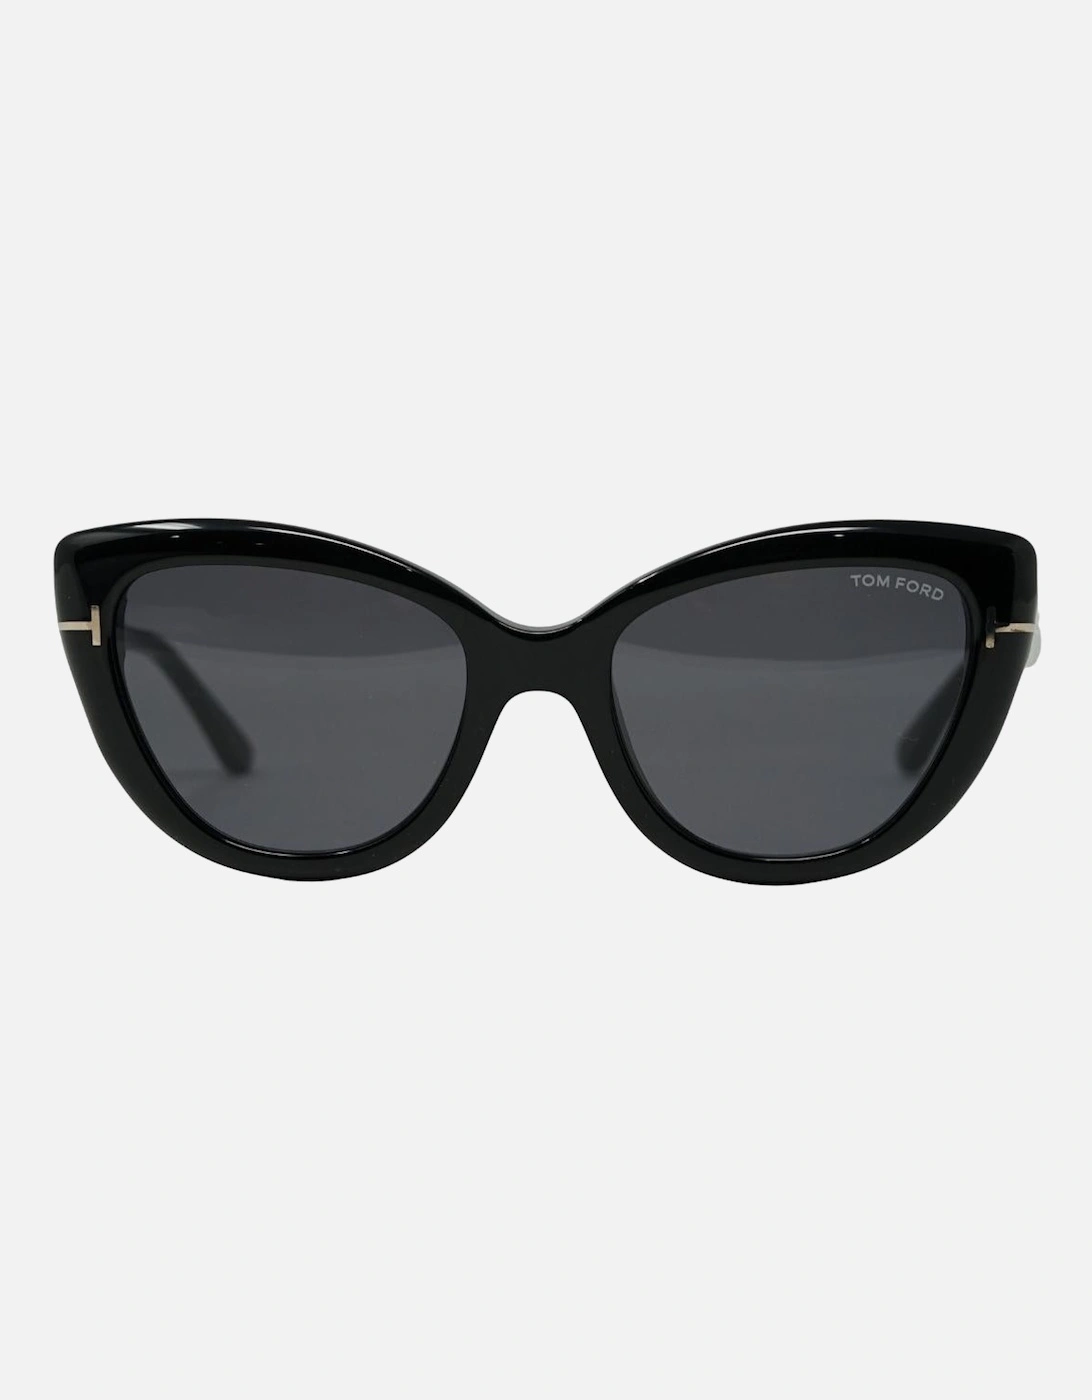 Anya FT0762 01A Black Sunglasses, 4 of 3